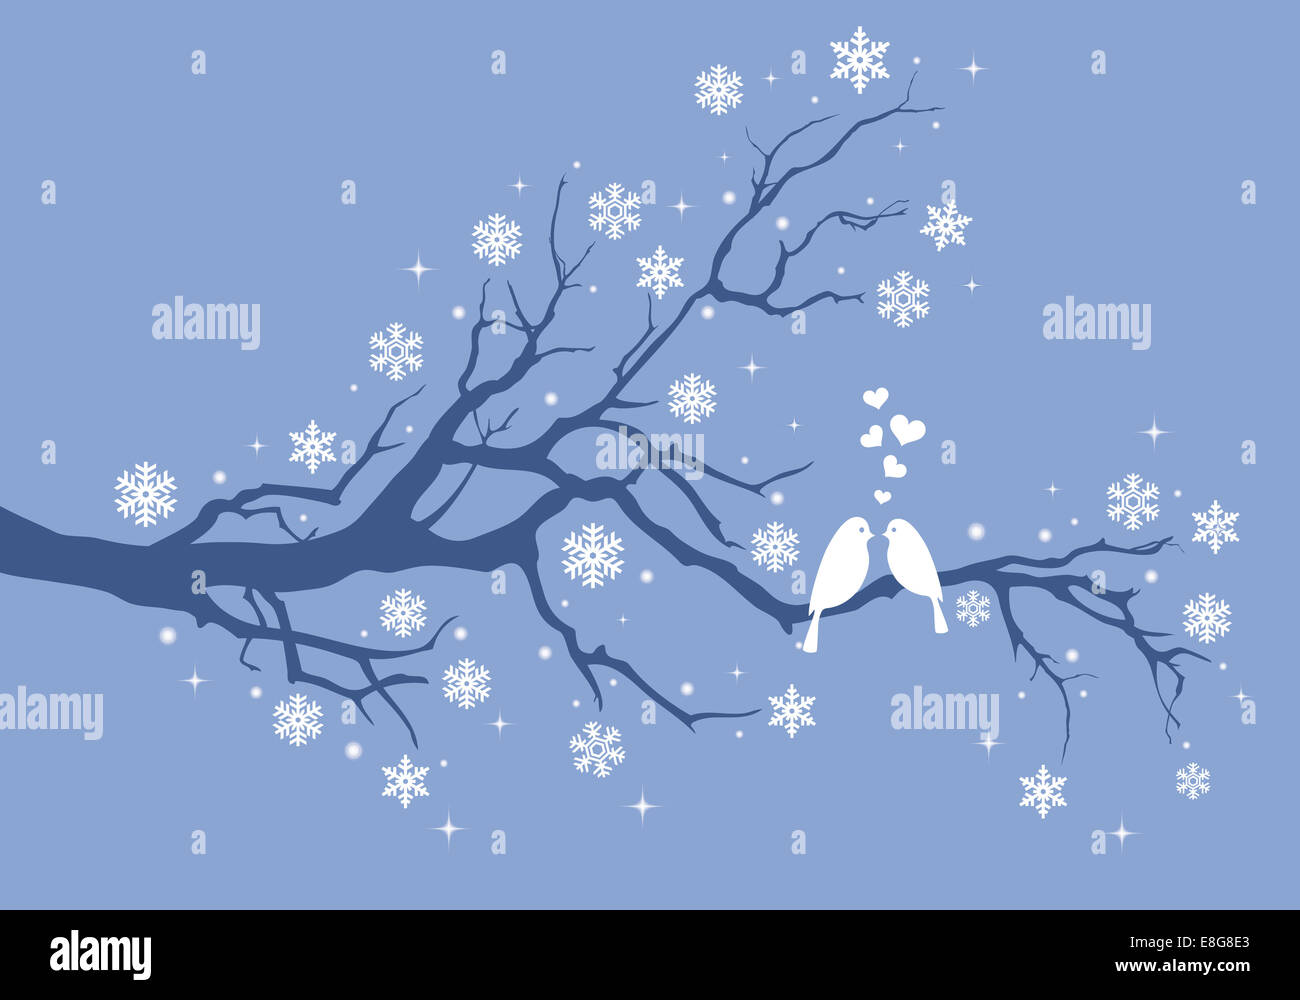 Weihnachten-Vögel im Winter Baum mit Schneeflocken, Vektor-illustration Stockfoto